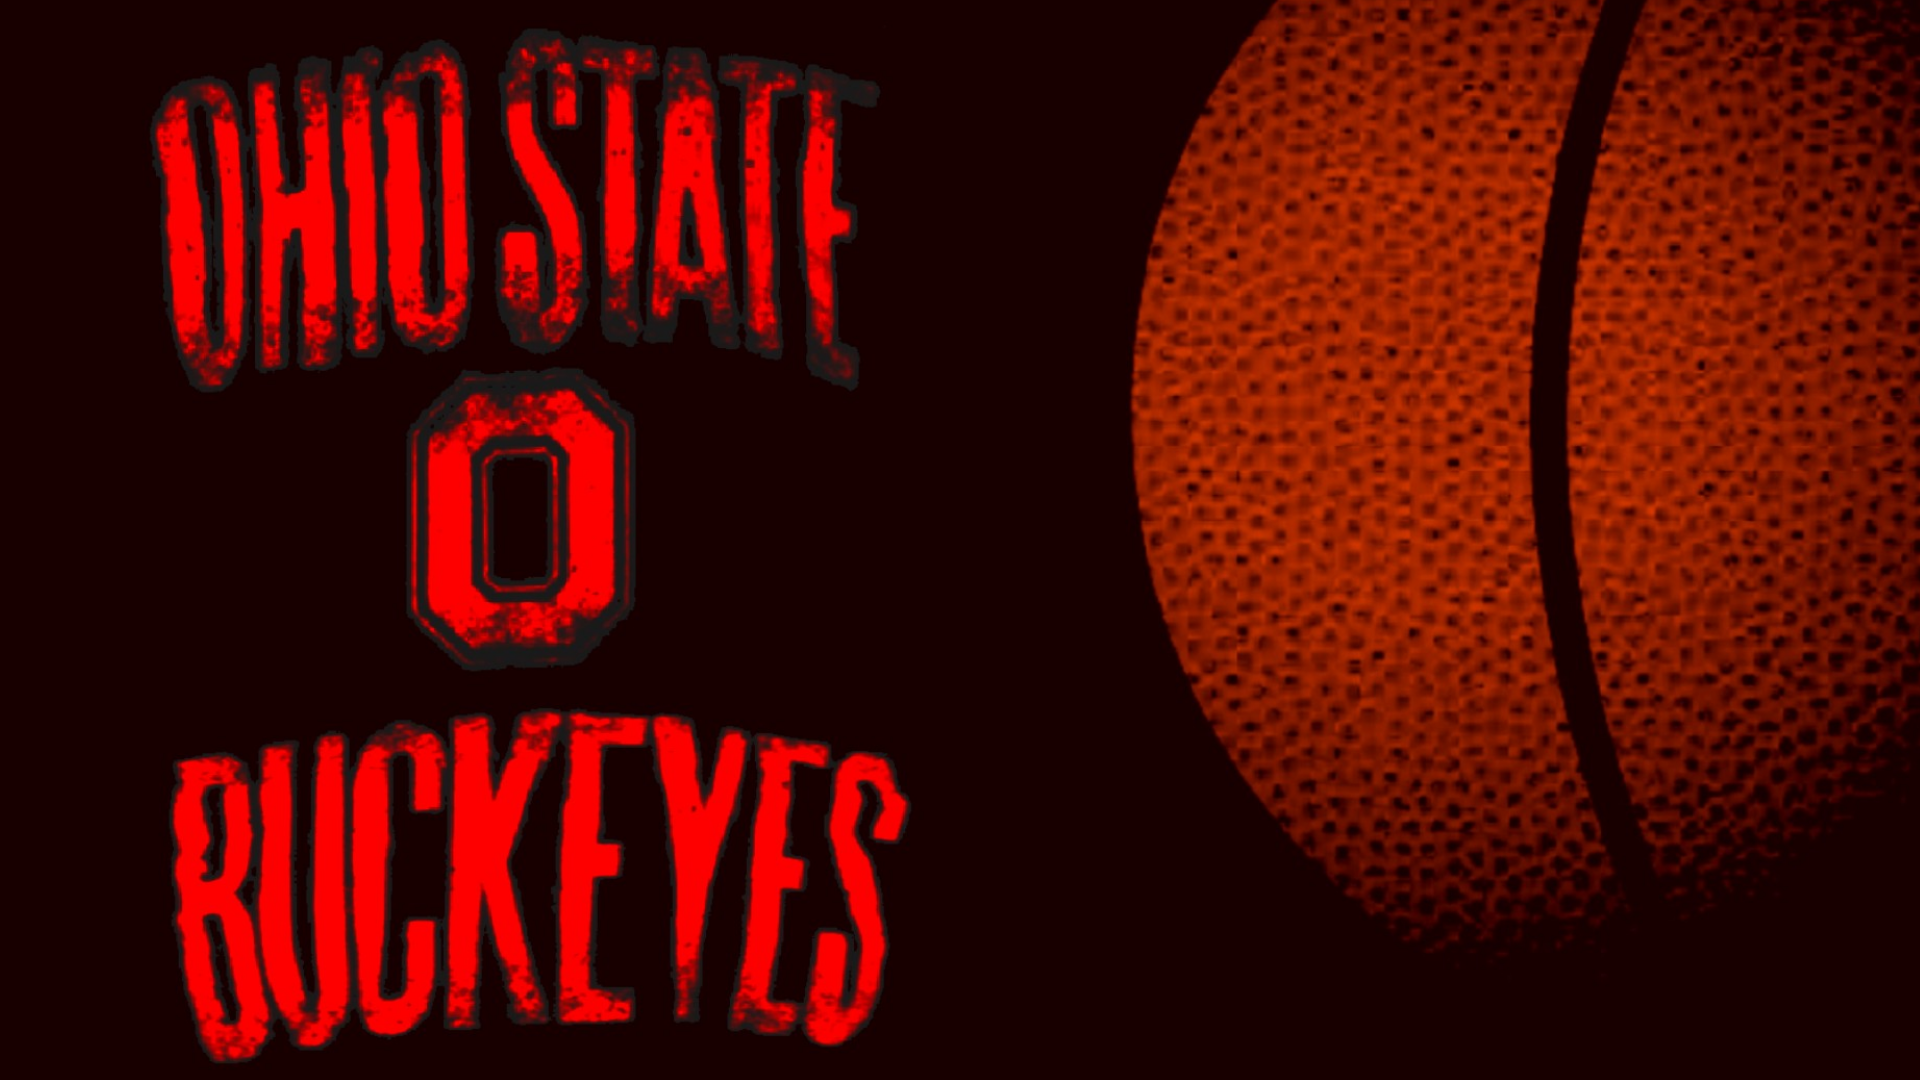 Osu Basketball Wallpaper Large Ball Ohio State University